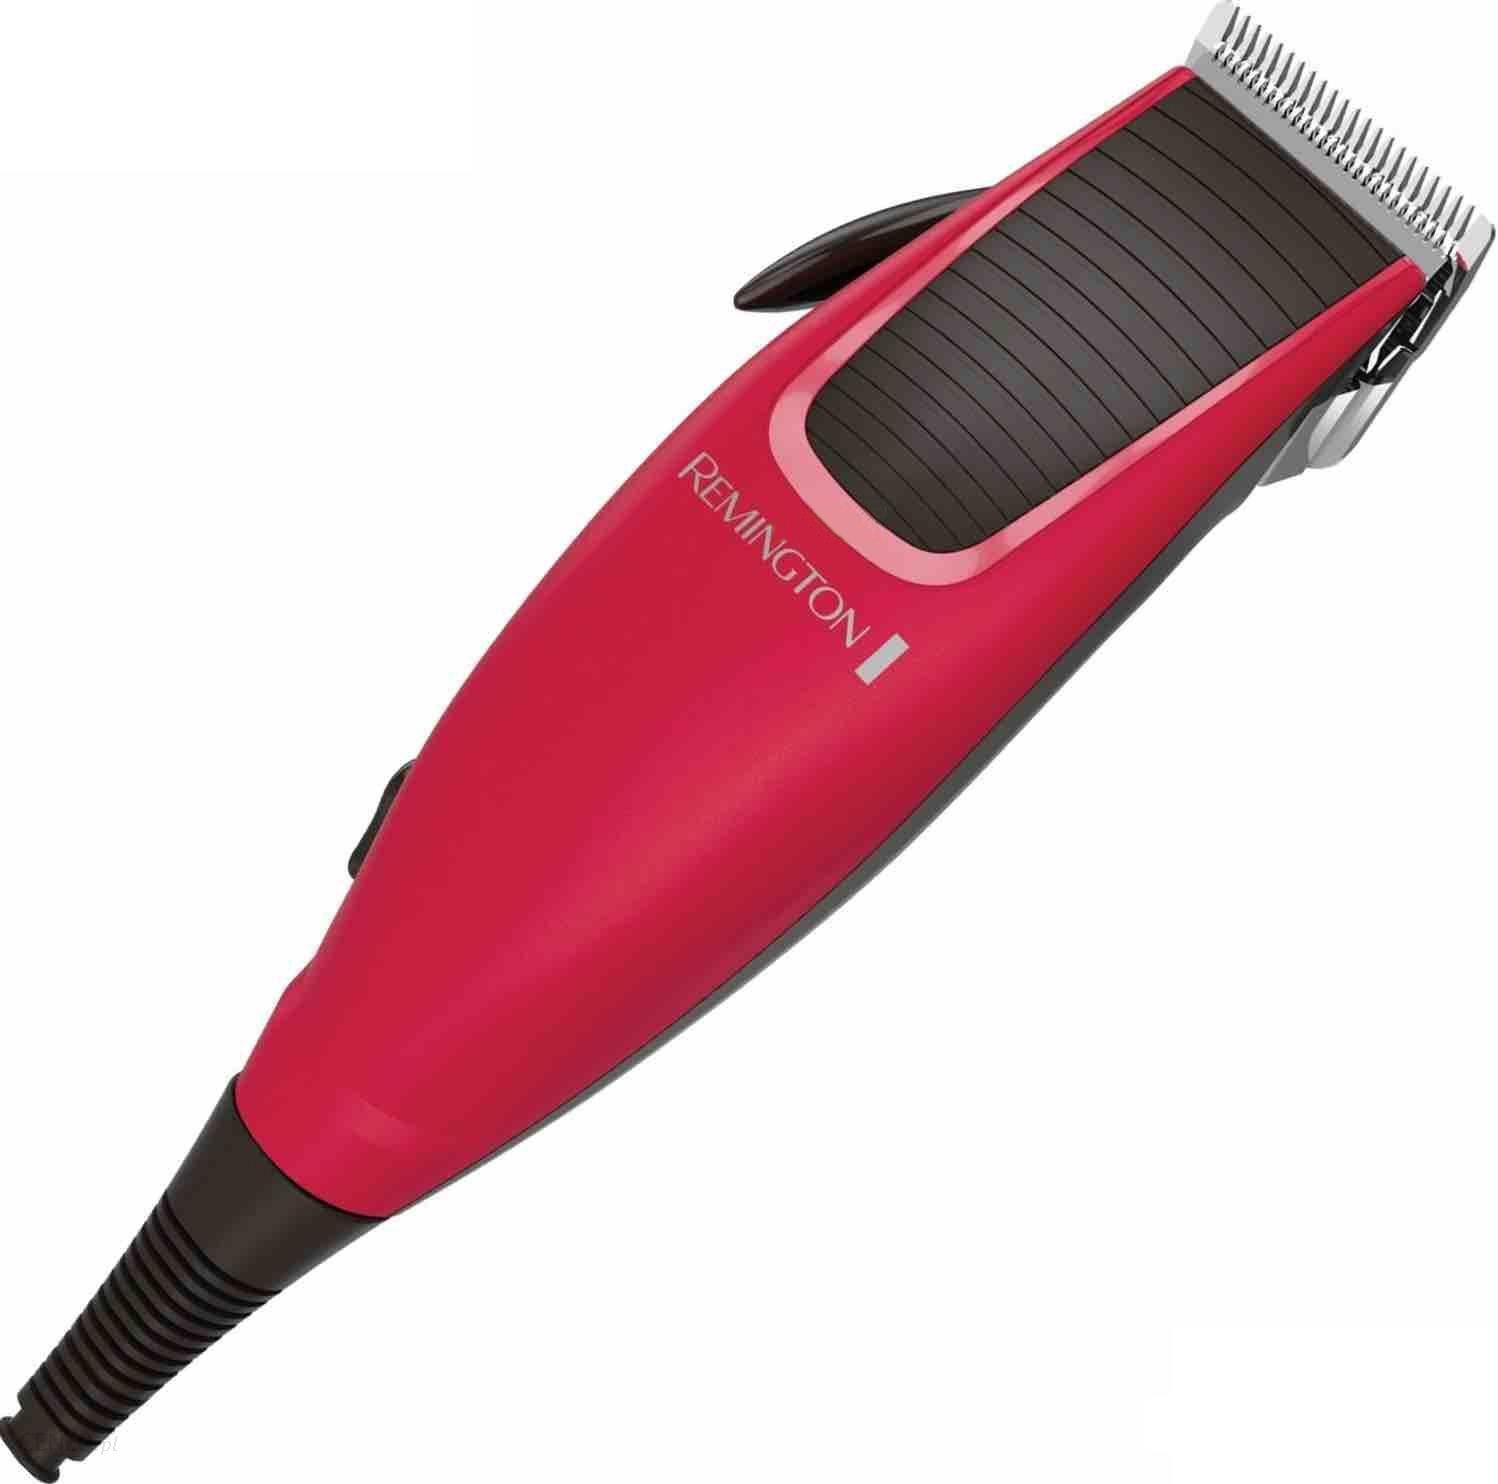 Rscx 5018 машинка для стрижки волос